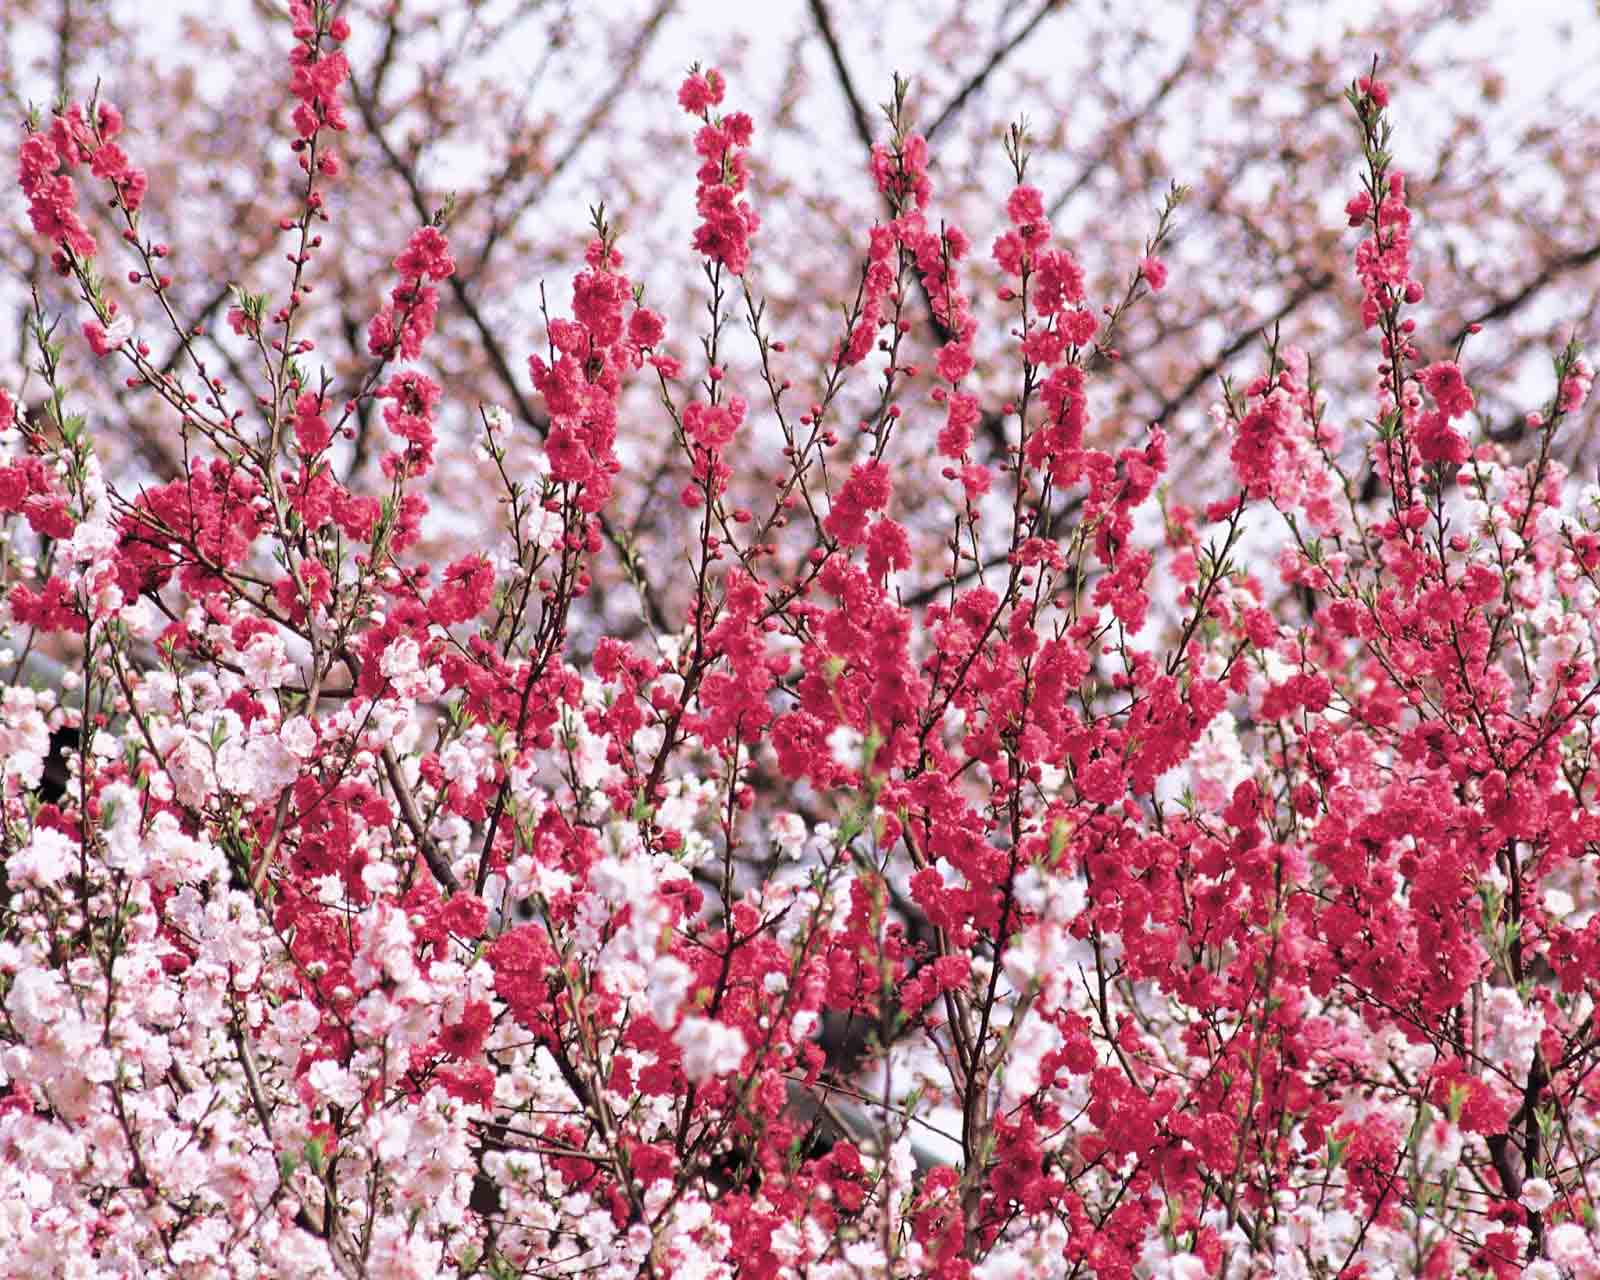 Những bông hoa đào ngày Tết lung linh tràn ngập sắc hồng tươi tắn, tượng trưng cho sự bình an, may mắn và thành đạt. Hãy cùng chiêm ngưỡng hình ảnh tuyệt đẹp về hoa đào ngày Tết để cảm nhận không khí ấm áp đón Tết dân tộc Việt Nam.